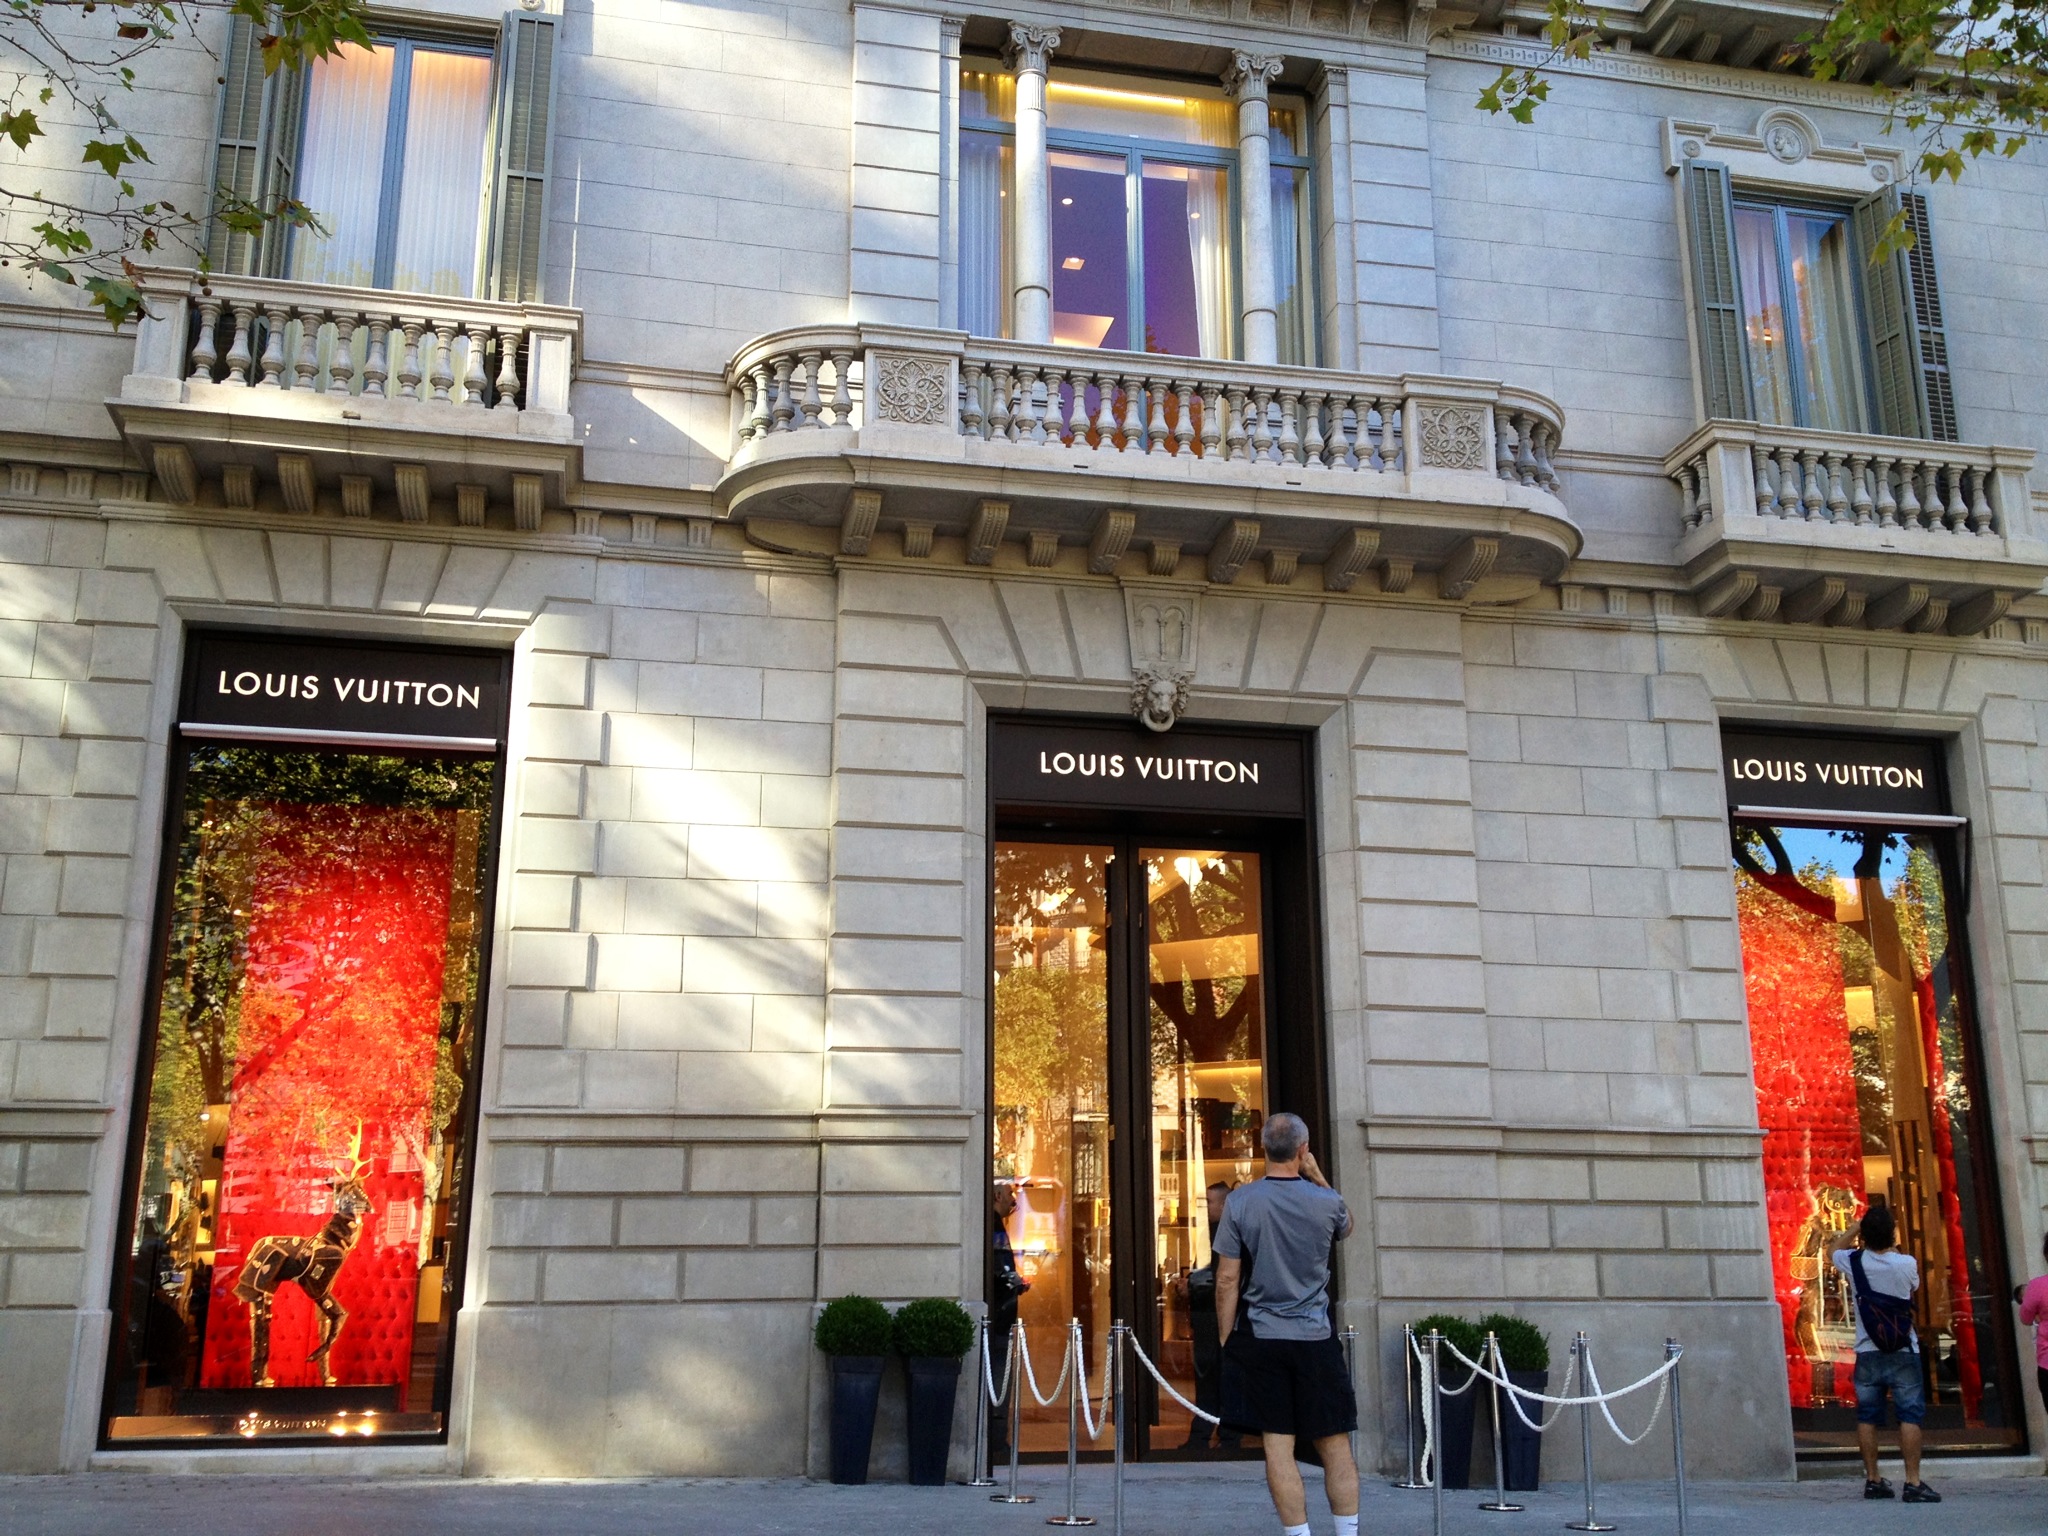 Tienda Louis Vuitton Barcelona Paseo de Gracia - España